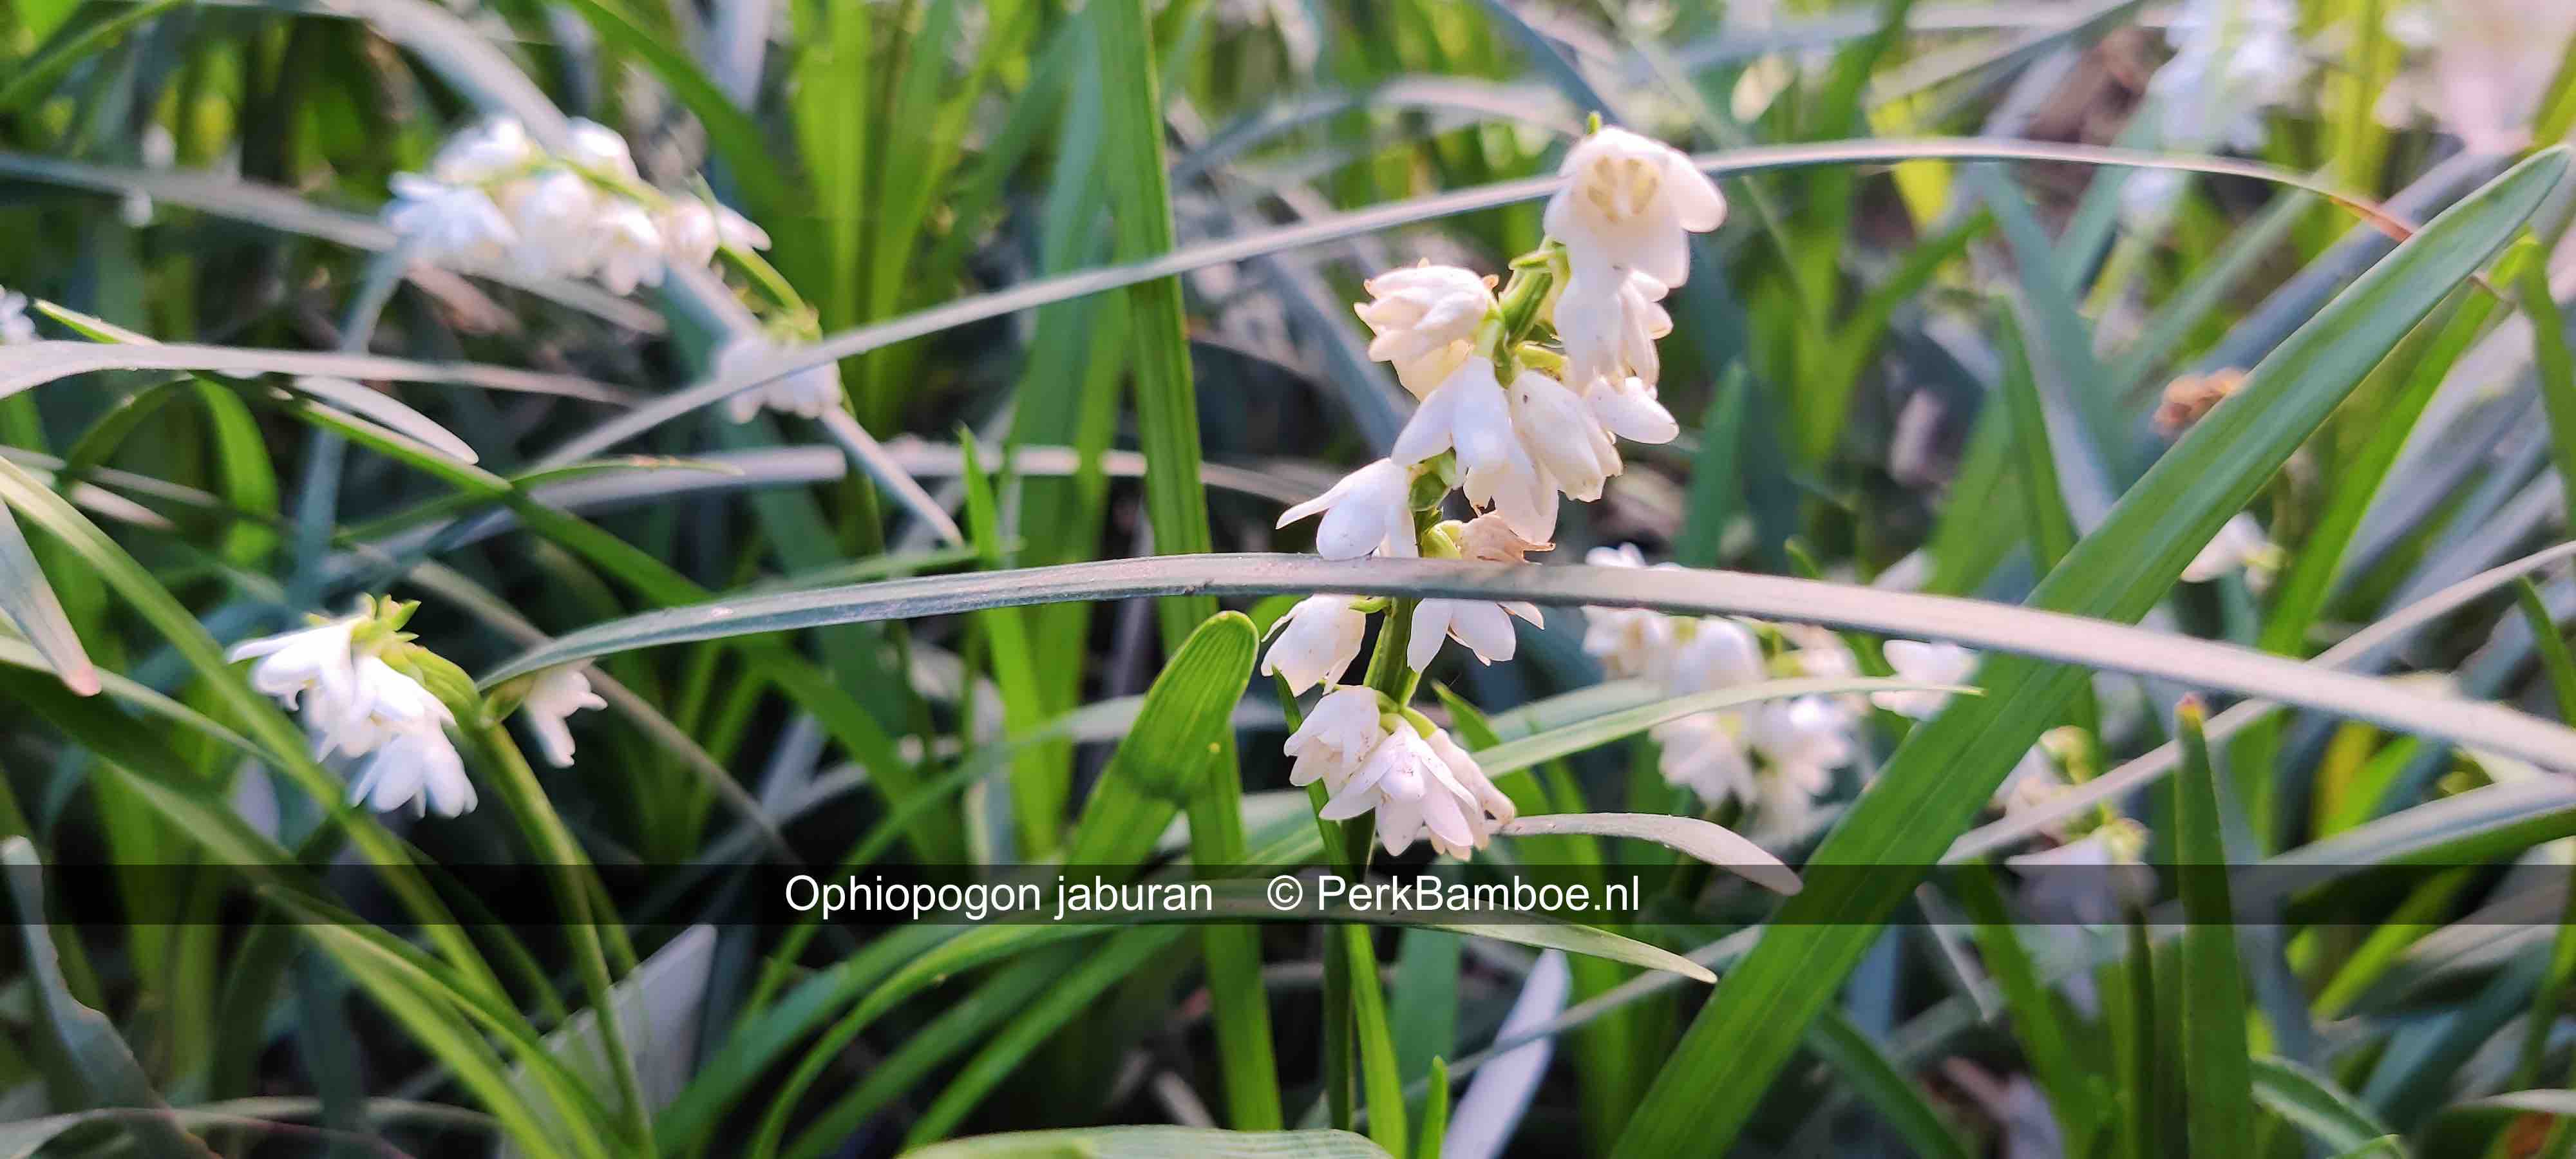 Ophiopogon jaburan 3 PerkBamboe nl